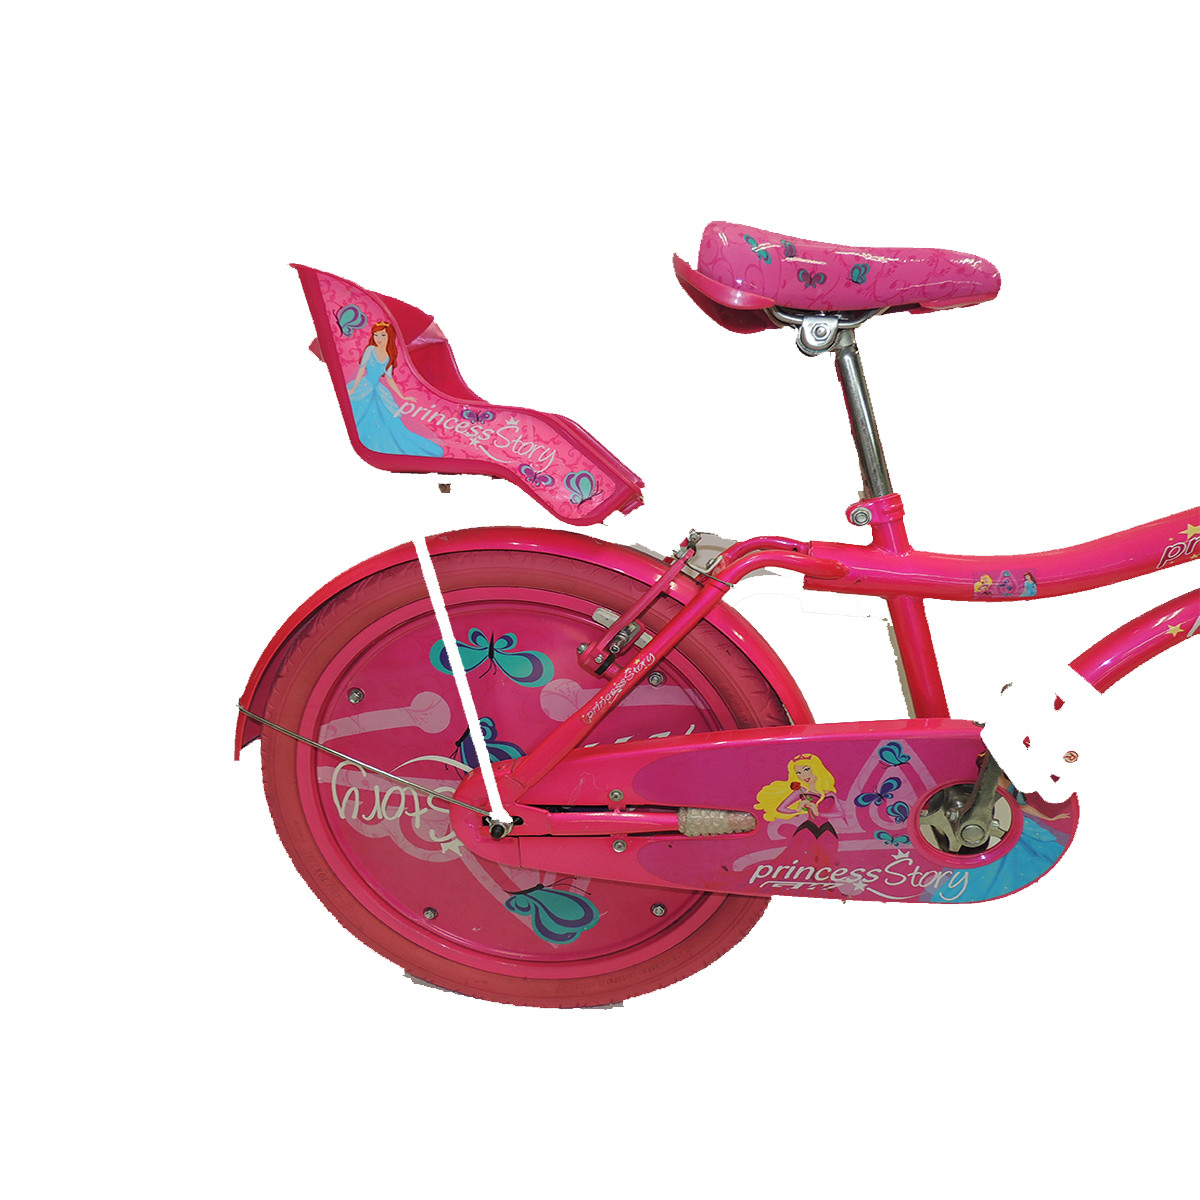 Imagen Bicicleta GW Princess rin 12 niñas 2 a 5 años 2